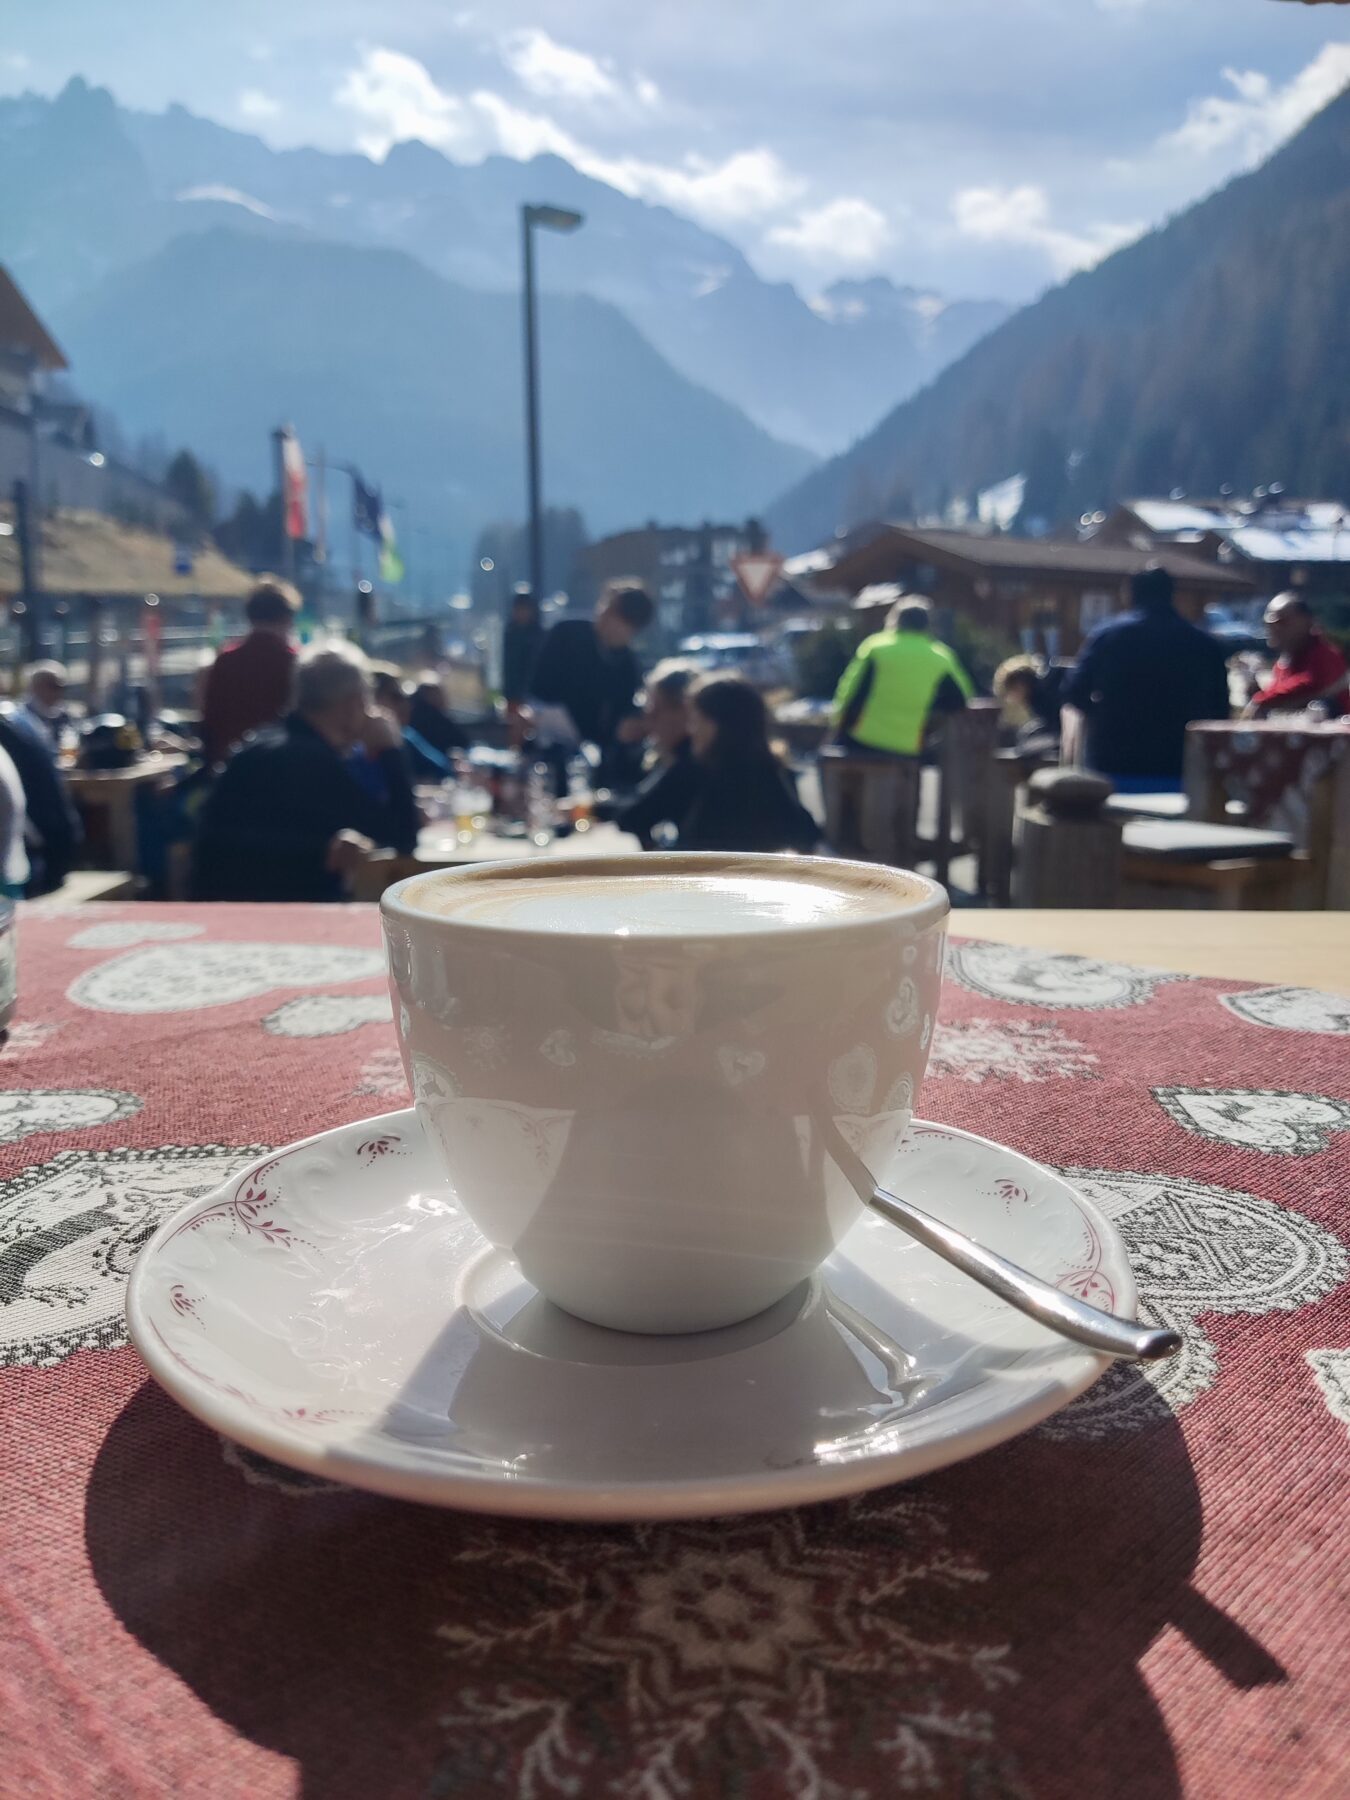 koffie met een terras met mensen en bergen op de achtergrond